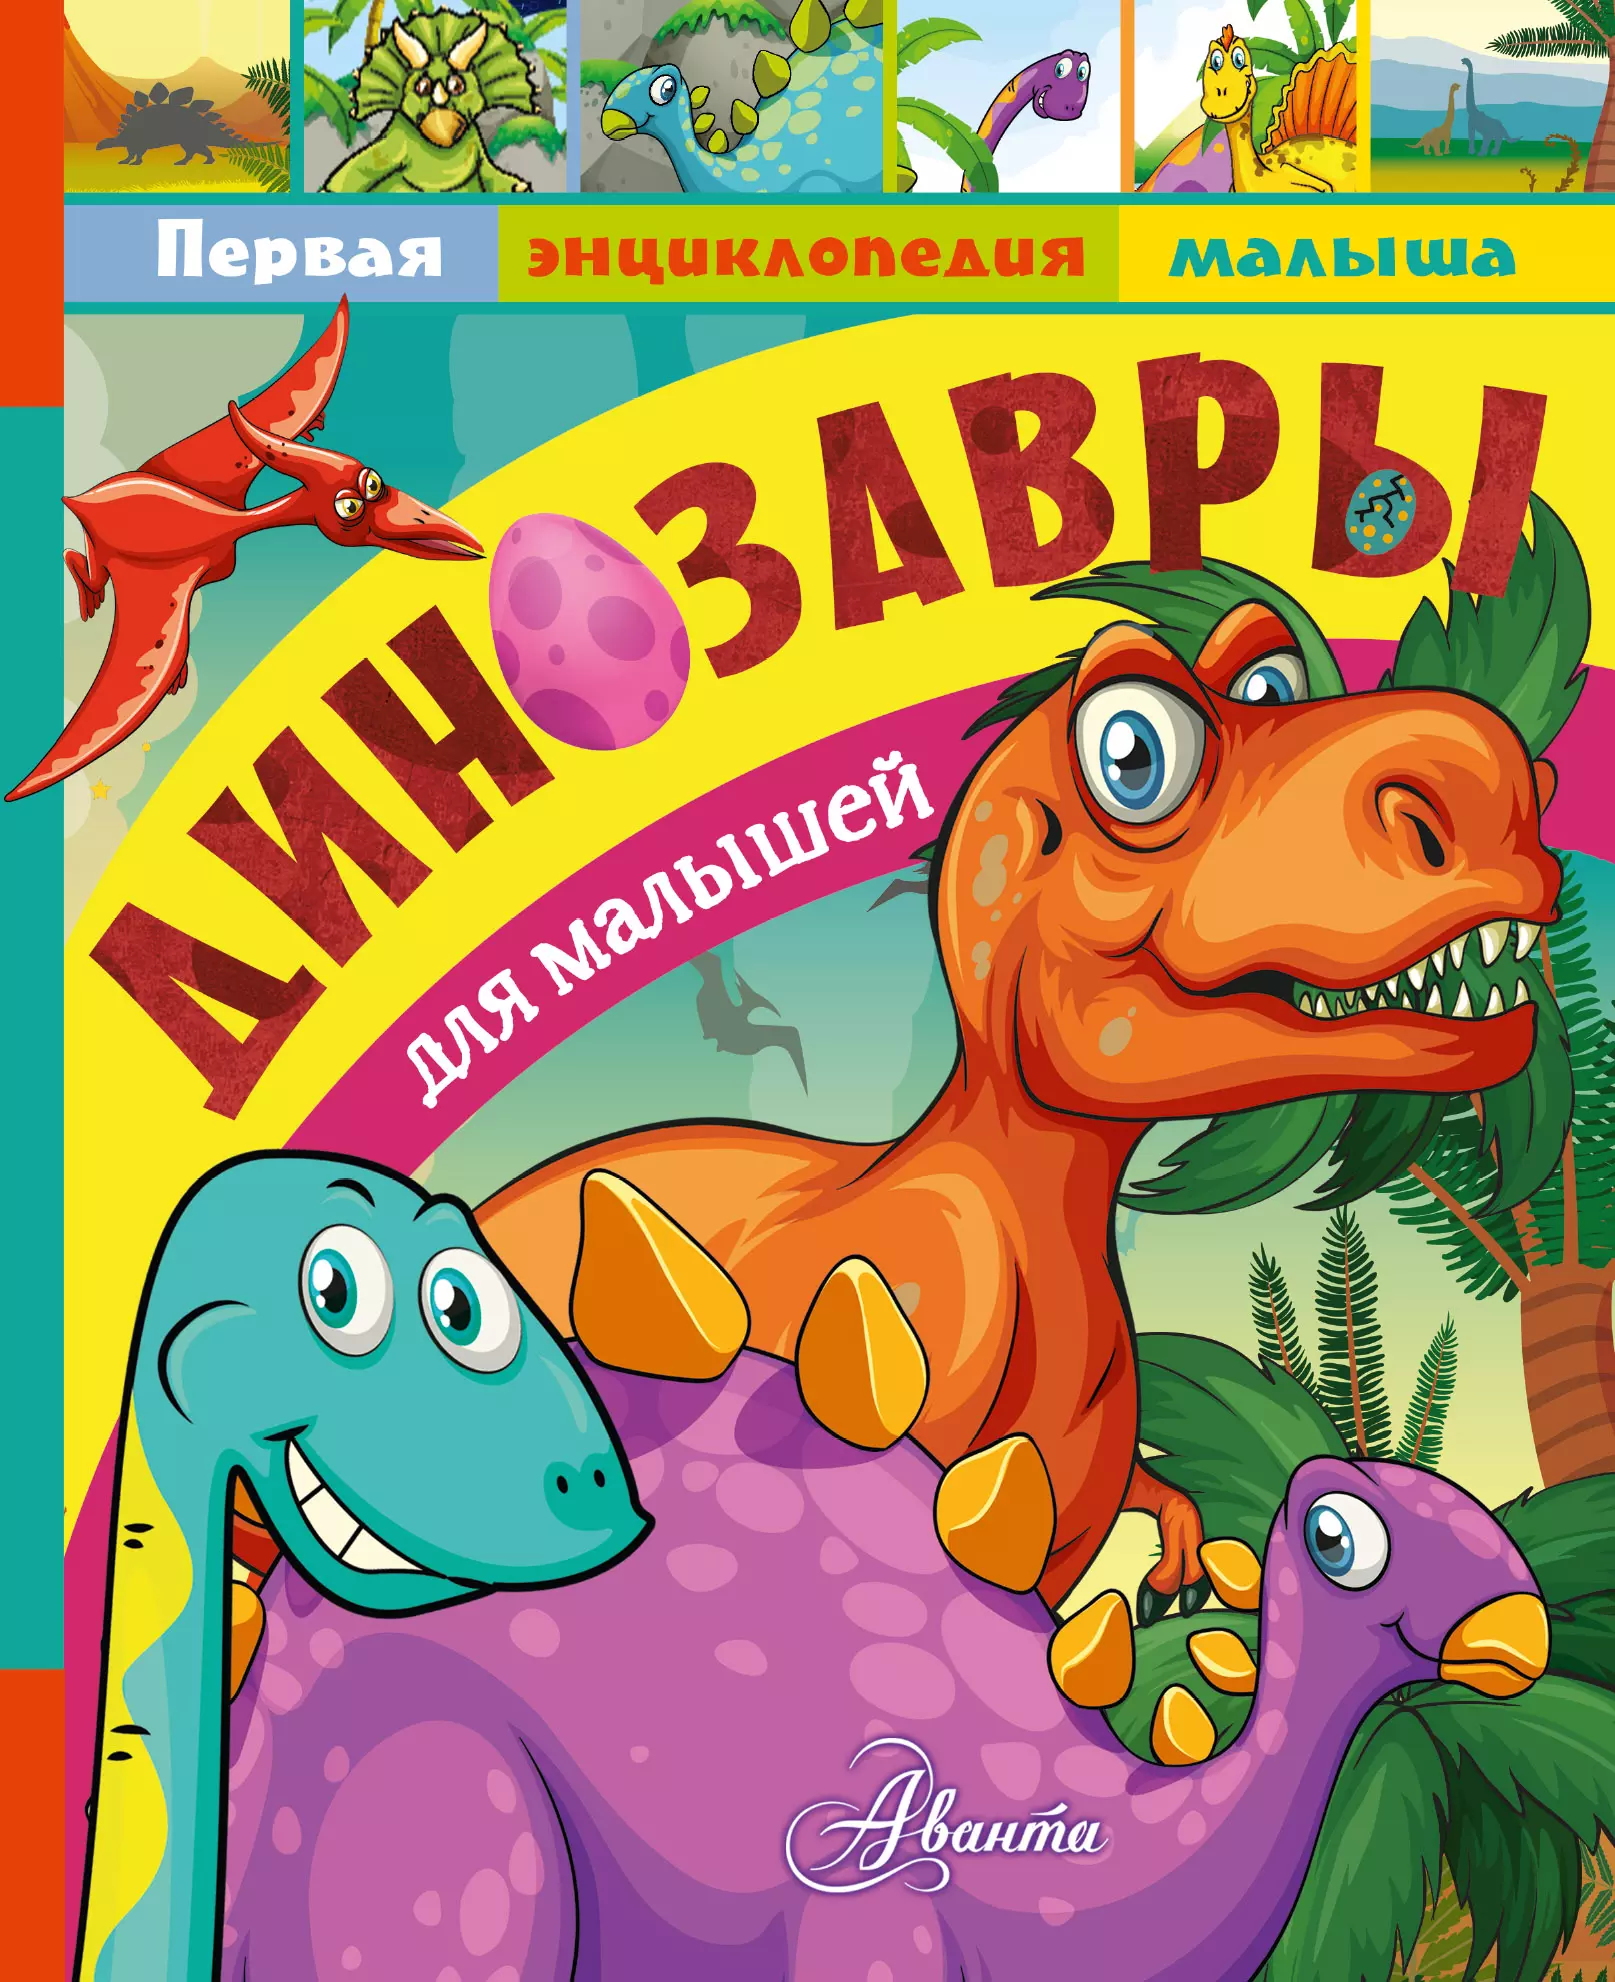 Тихонов Александр Васильевич - Динозавры для малышей